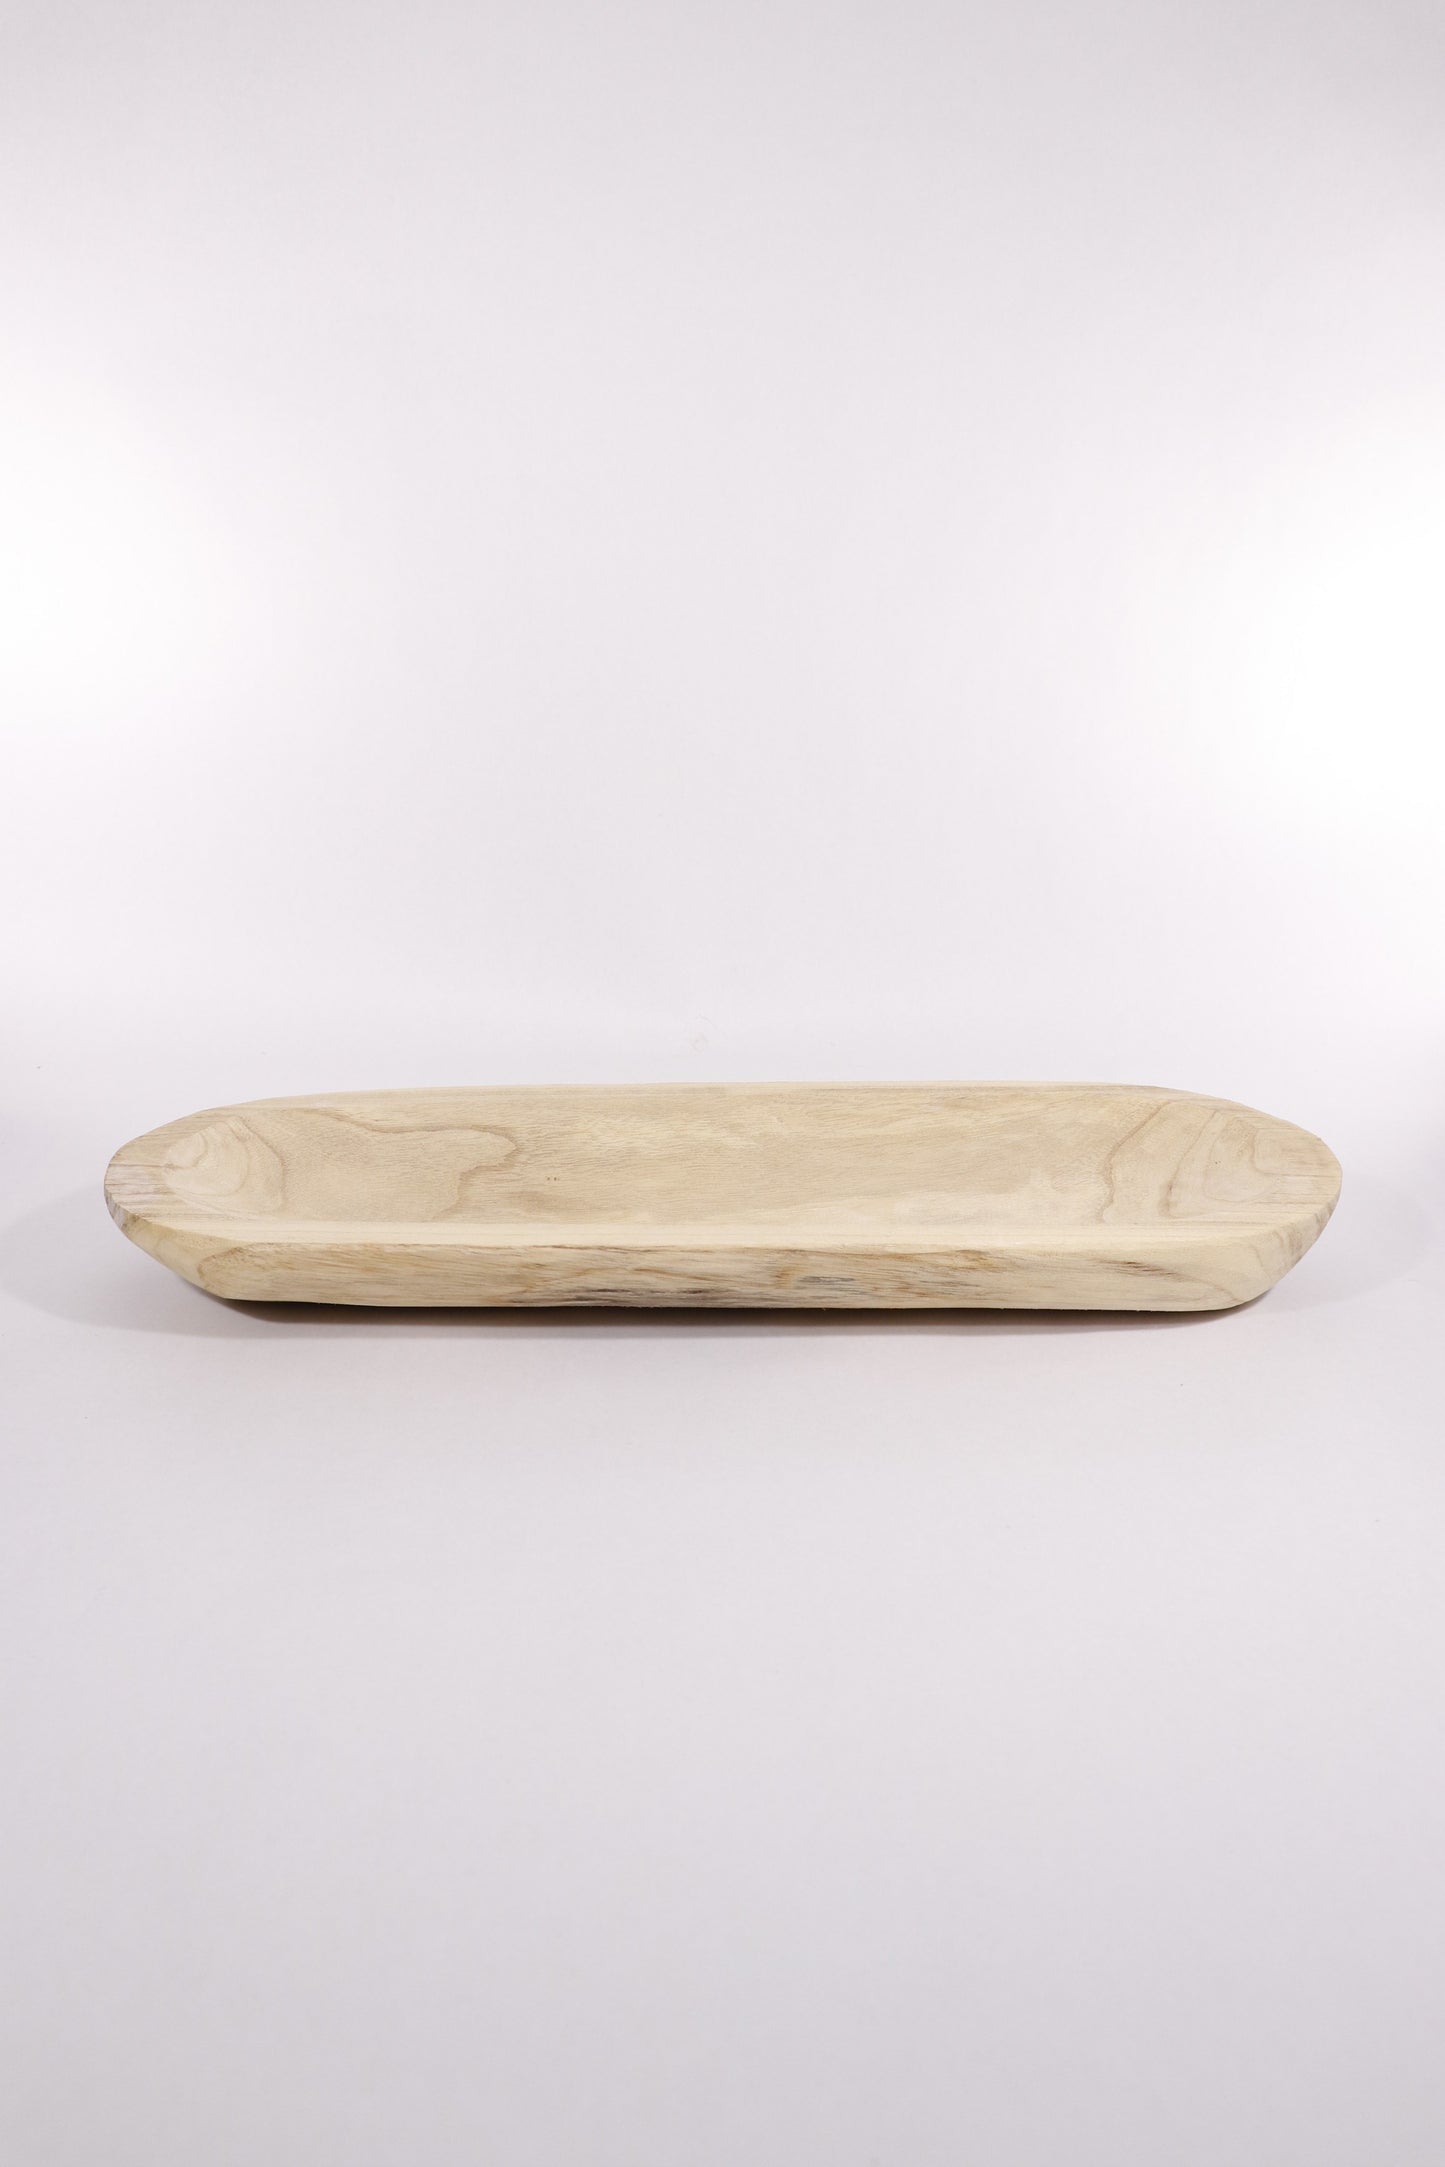 Paulownia Wood Dough Bowl